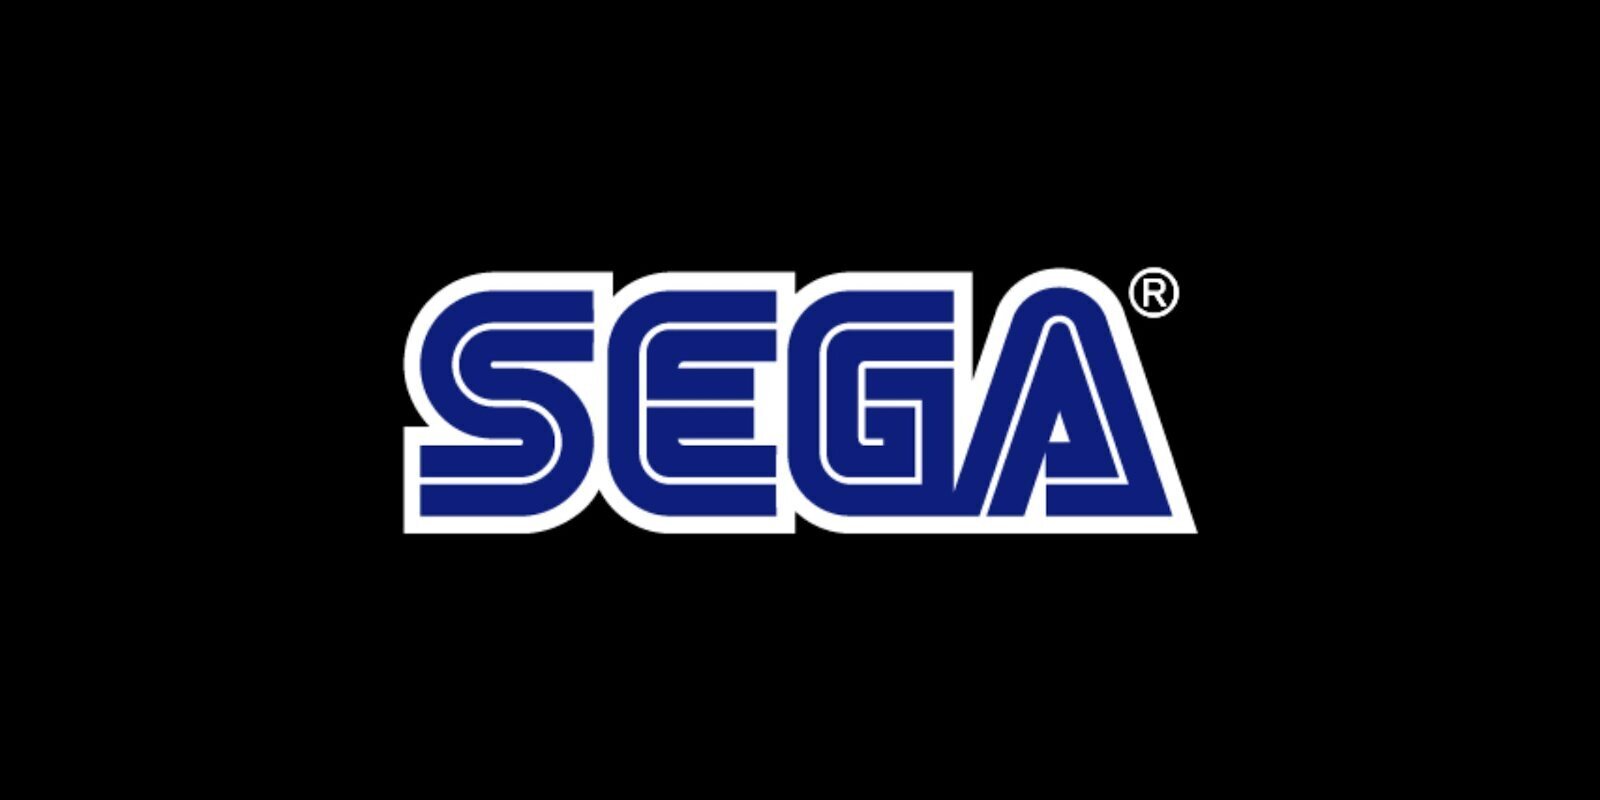 Sega especifica que 'Super Game' es una función para múltiples juegos y para los NFT